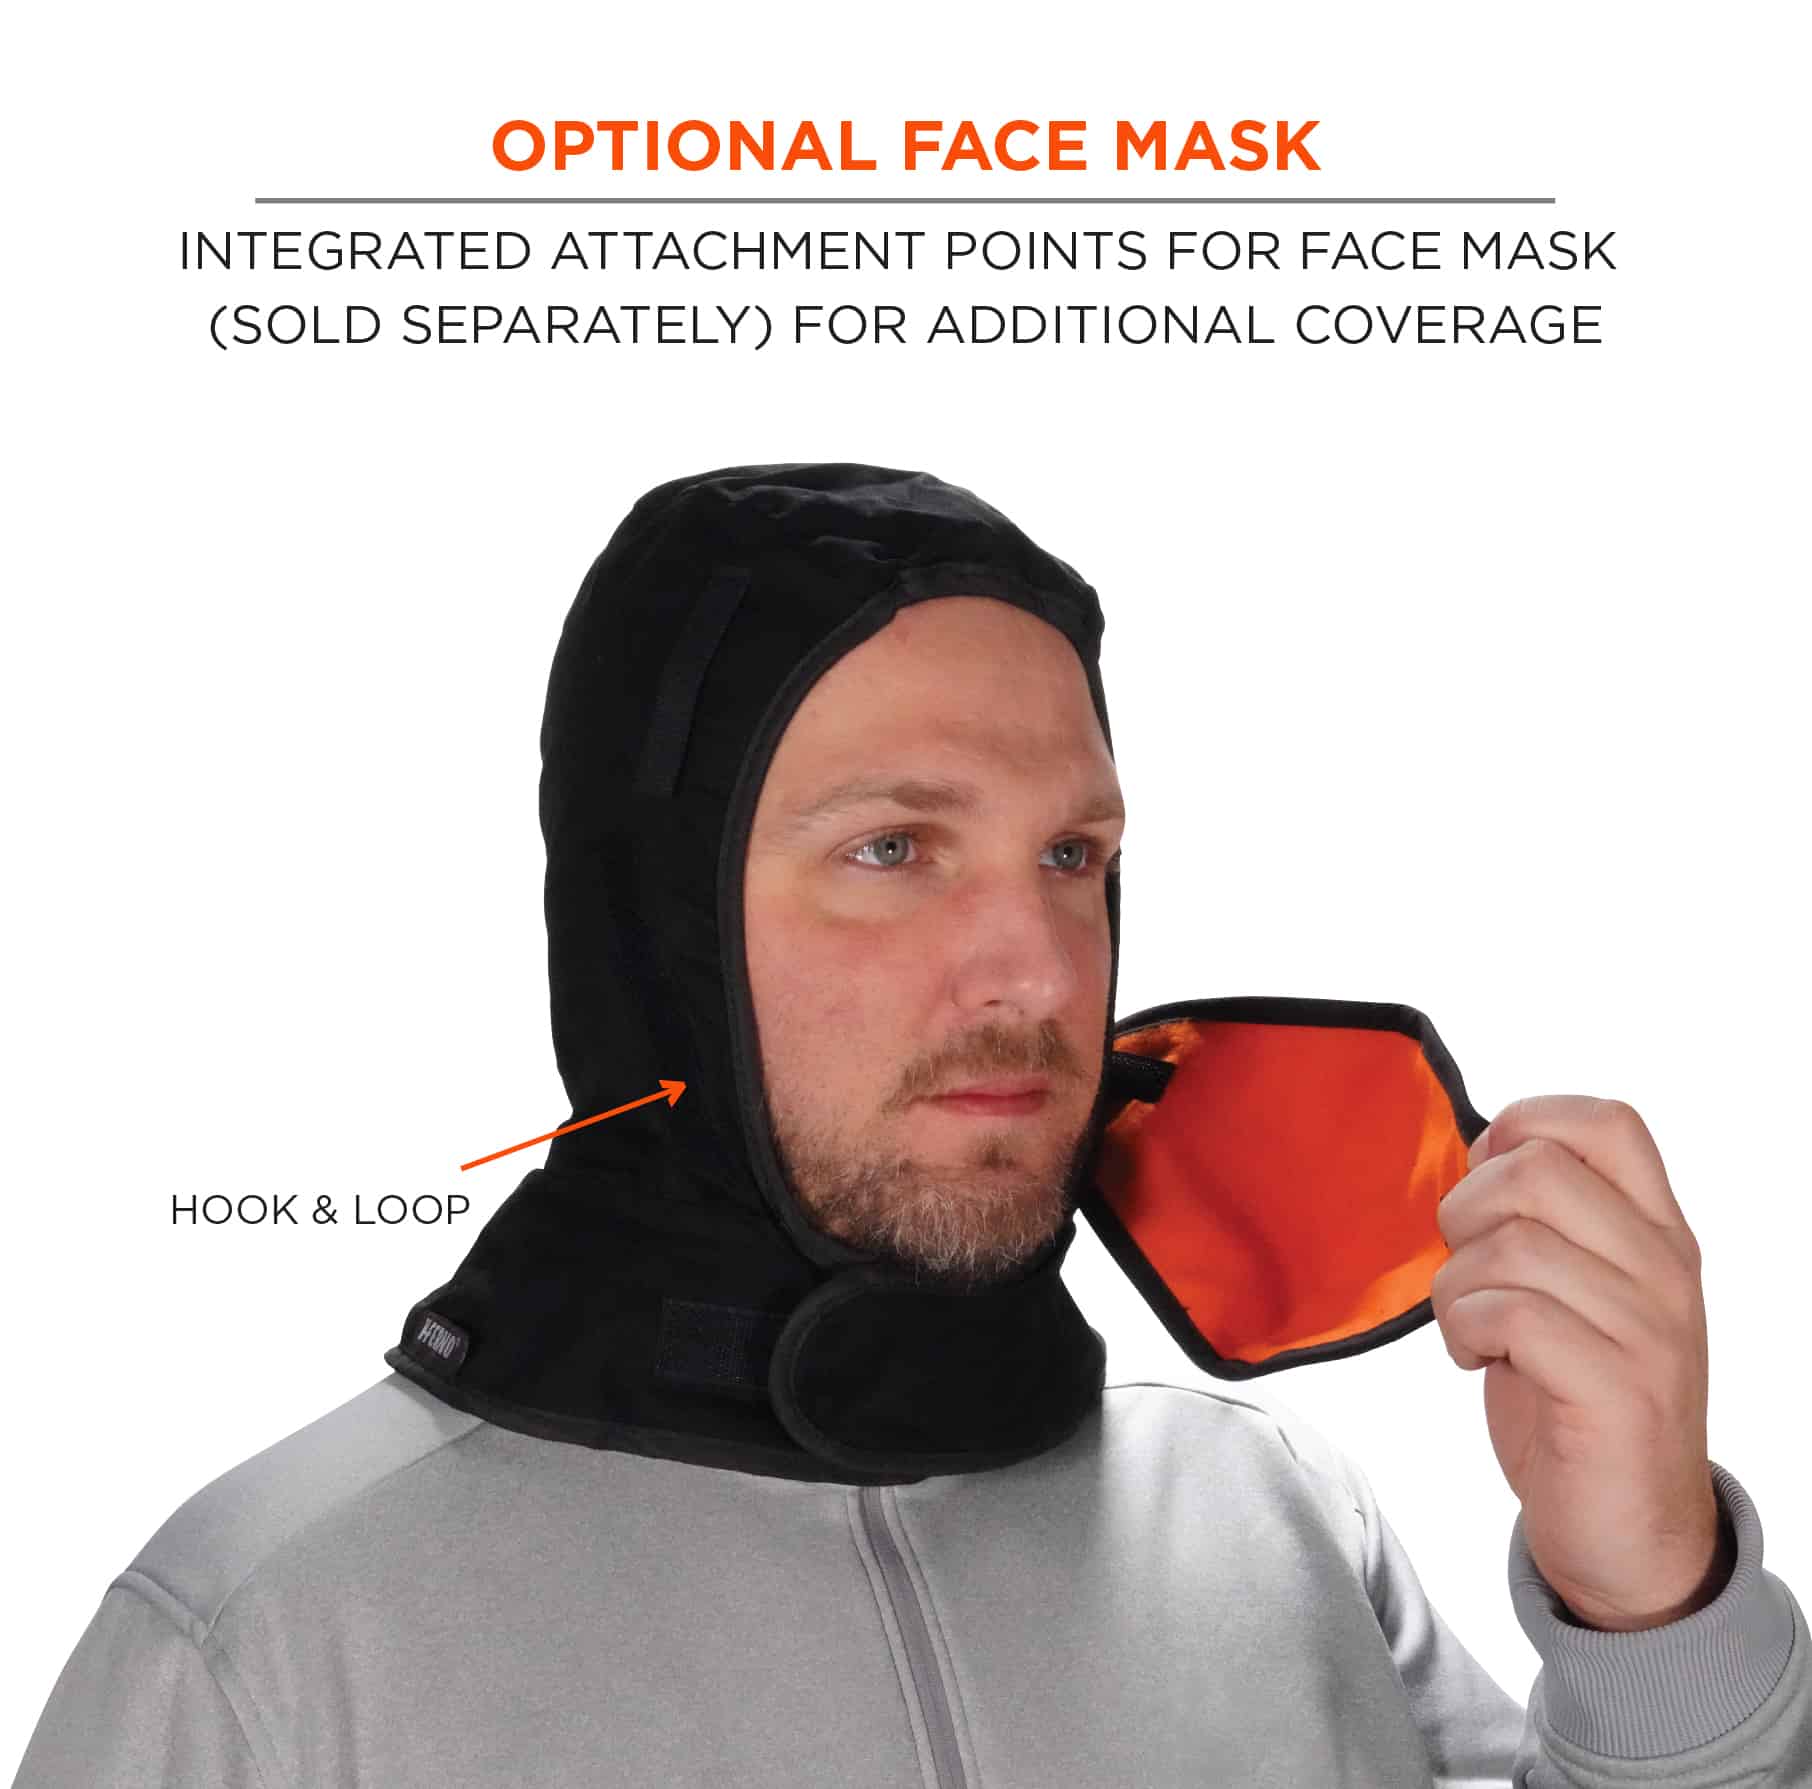 https://www.ergodyne.com/sites/default/files/product-images/16852-6852-winter-hard-hat-liner-black-optional-face-mask.jpg